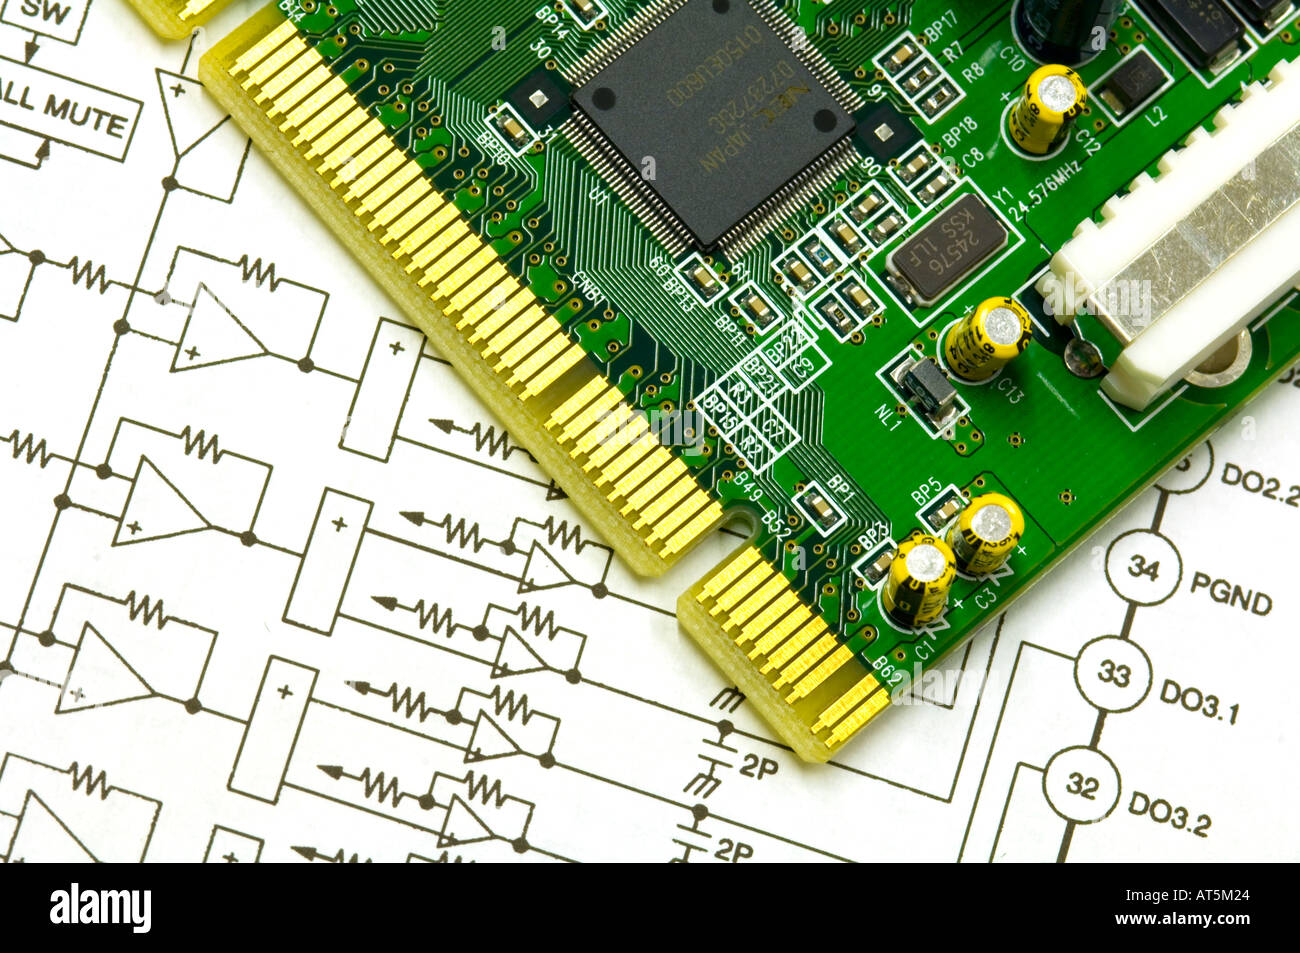 La scheda a circuito stampato e disegno schematico di un piano elettronico Foto Stock